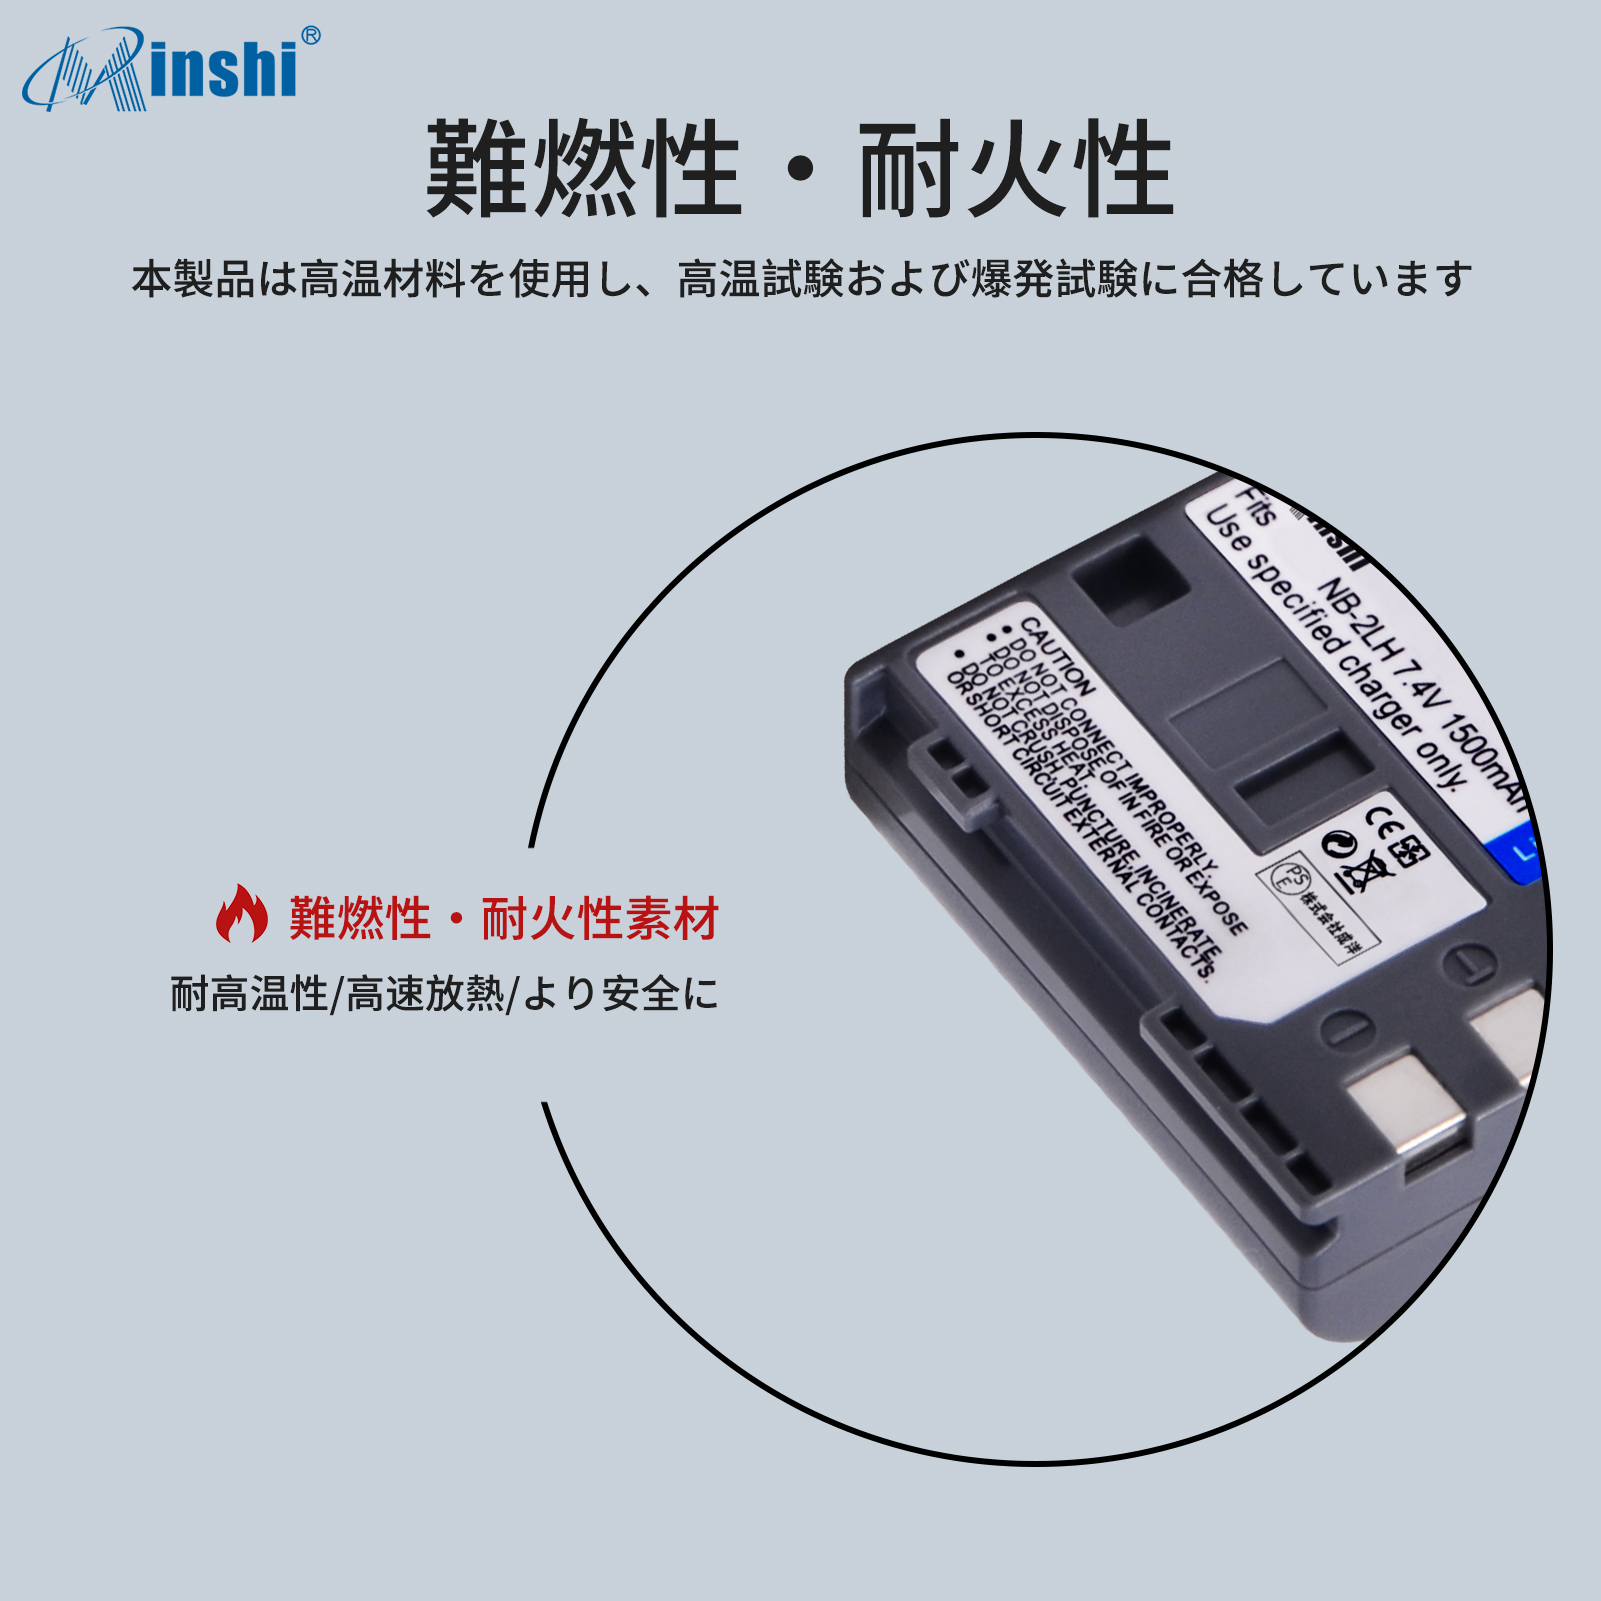 総合ランキング1位 【4個セット&2個充電器】 minshi Canon PowerShot G9 NB-2L 対応 互換バッテリー 1500mAh 高品質交換用バッテリー